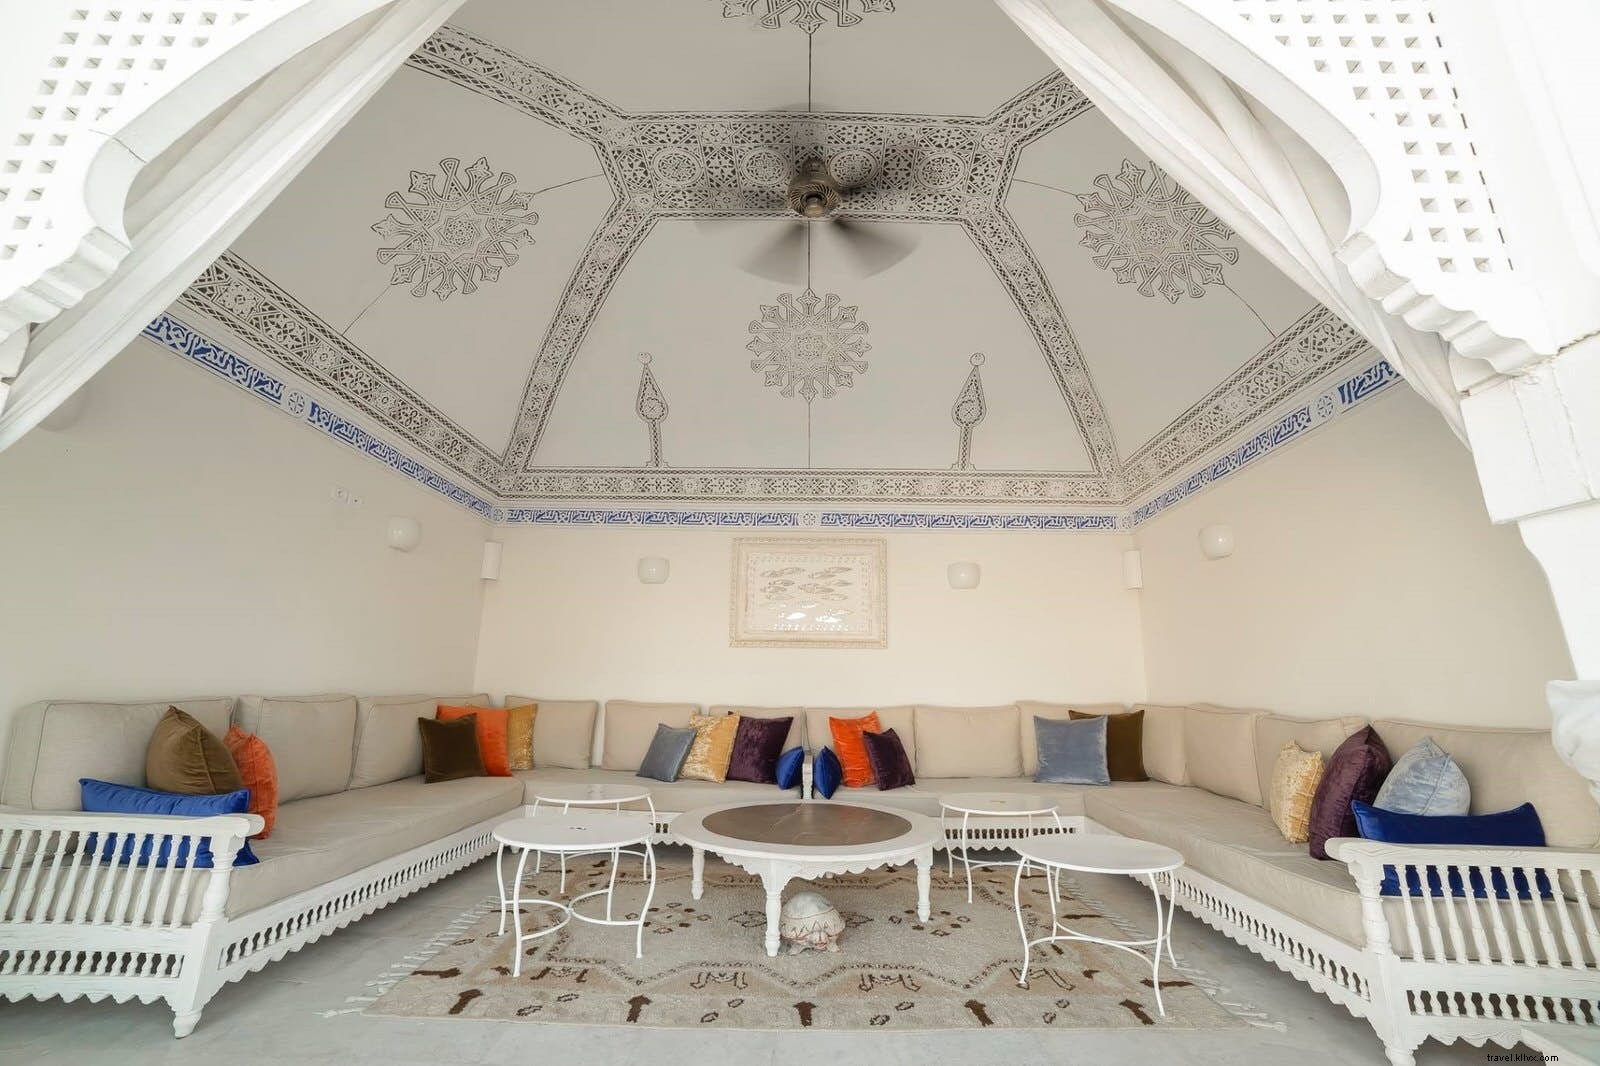 Ritorno al passato:pernottare nei migliori dar hotel tradizionali della Tunisia 